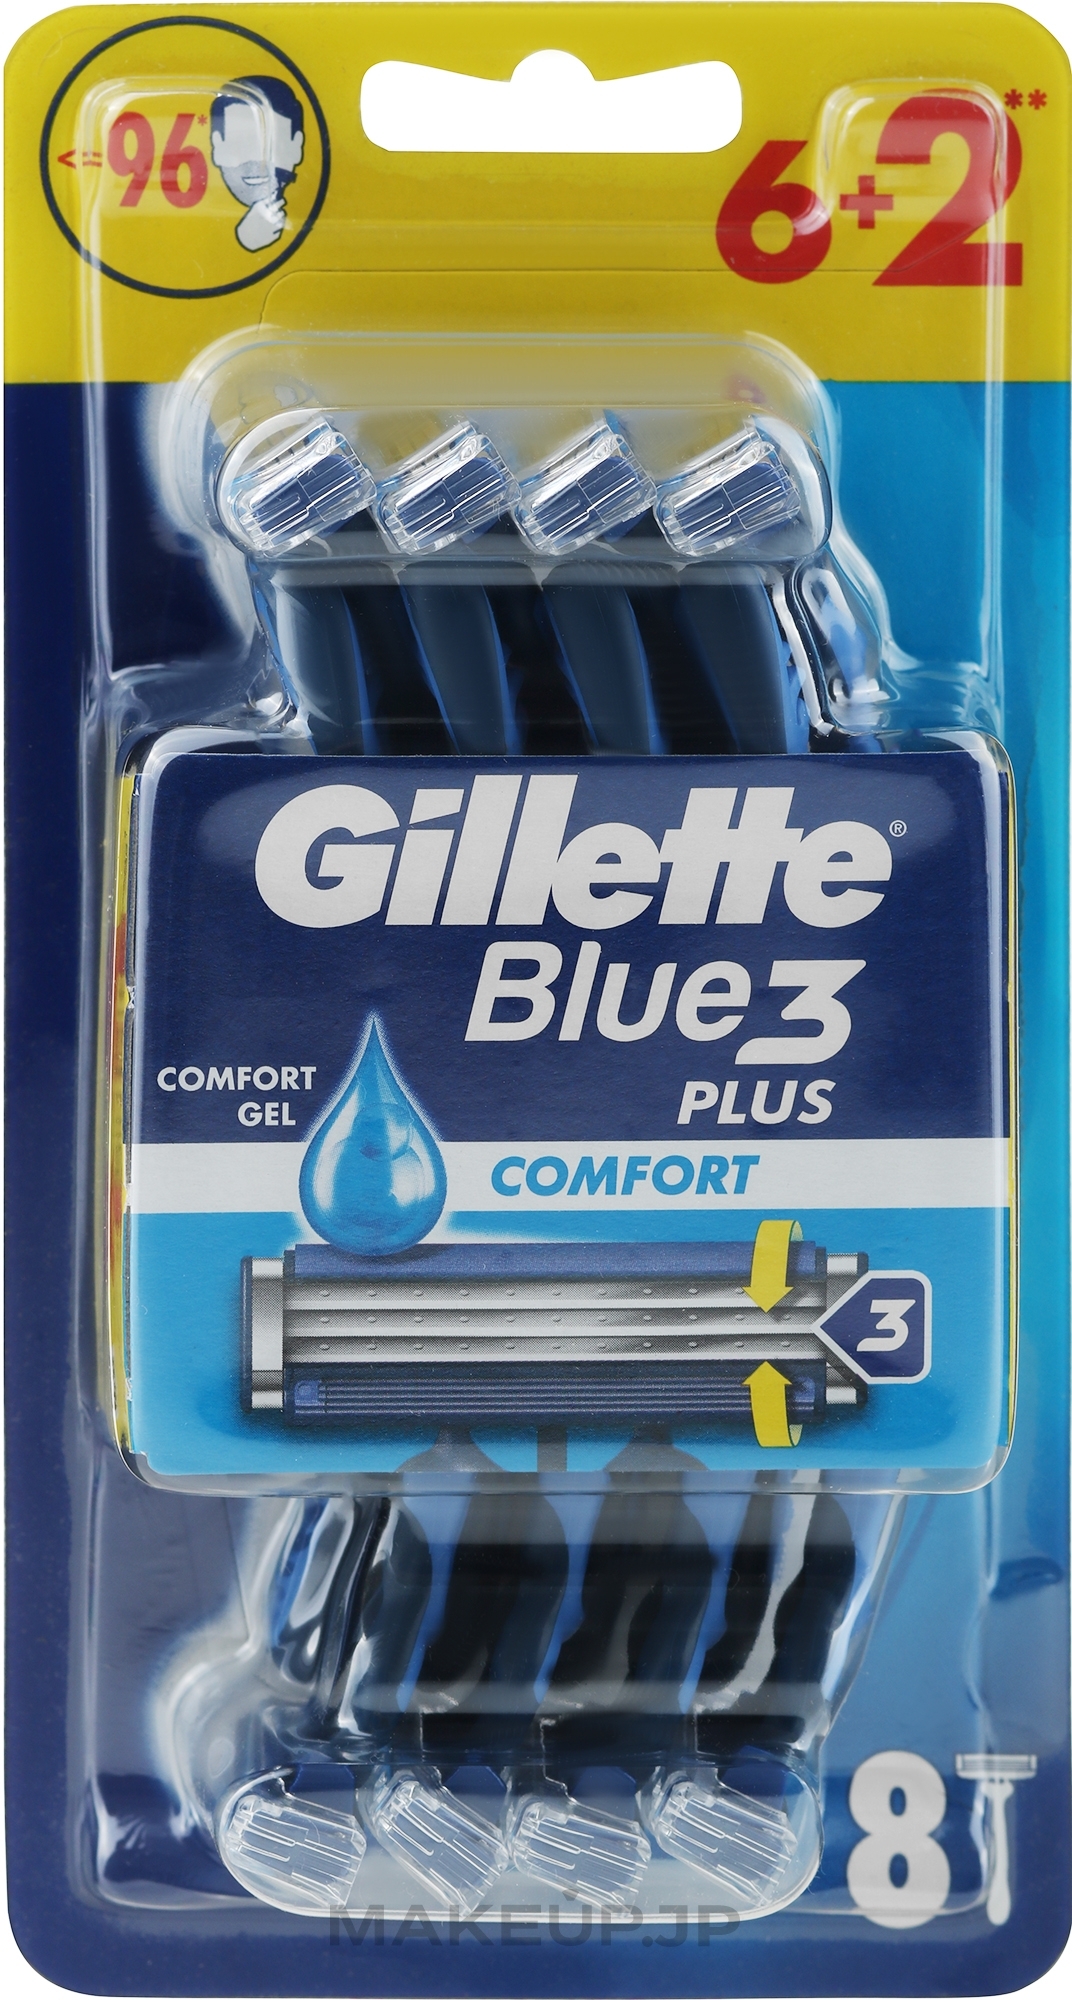 Disposable Shaving Razor Set, 6+2 pcs - Gillette Blue 3 Comfort — photo 8 szt.